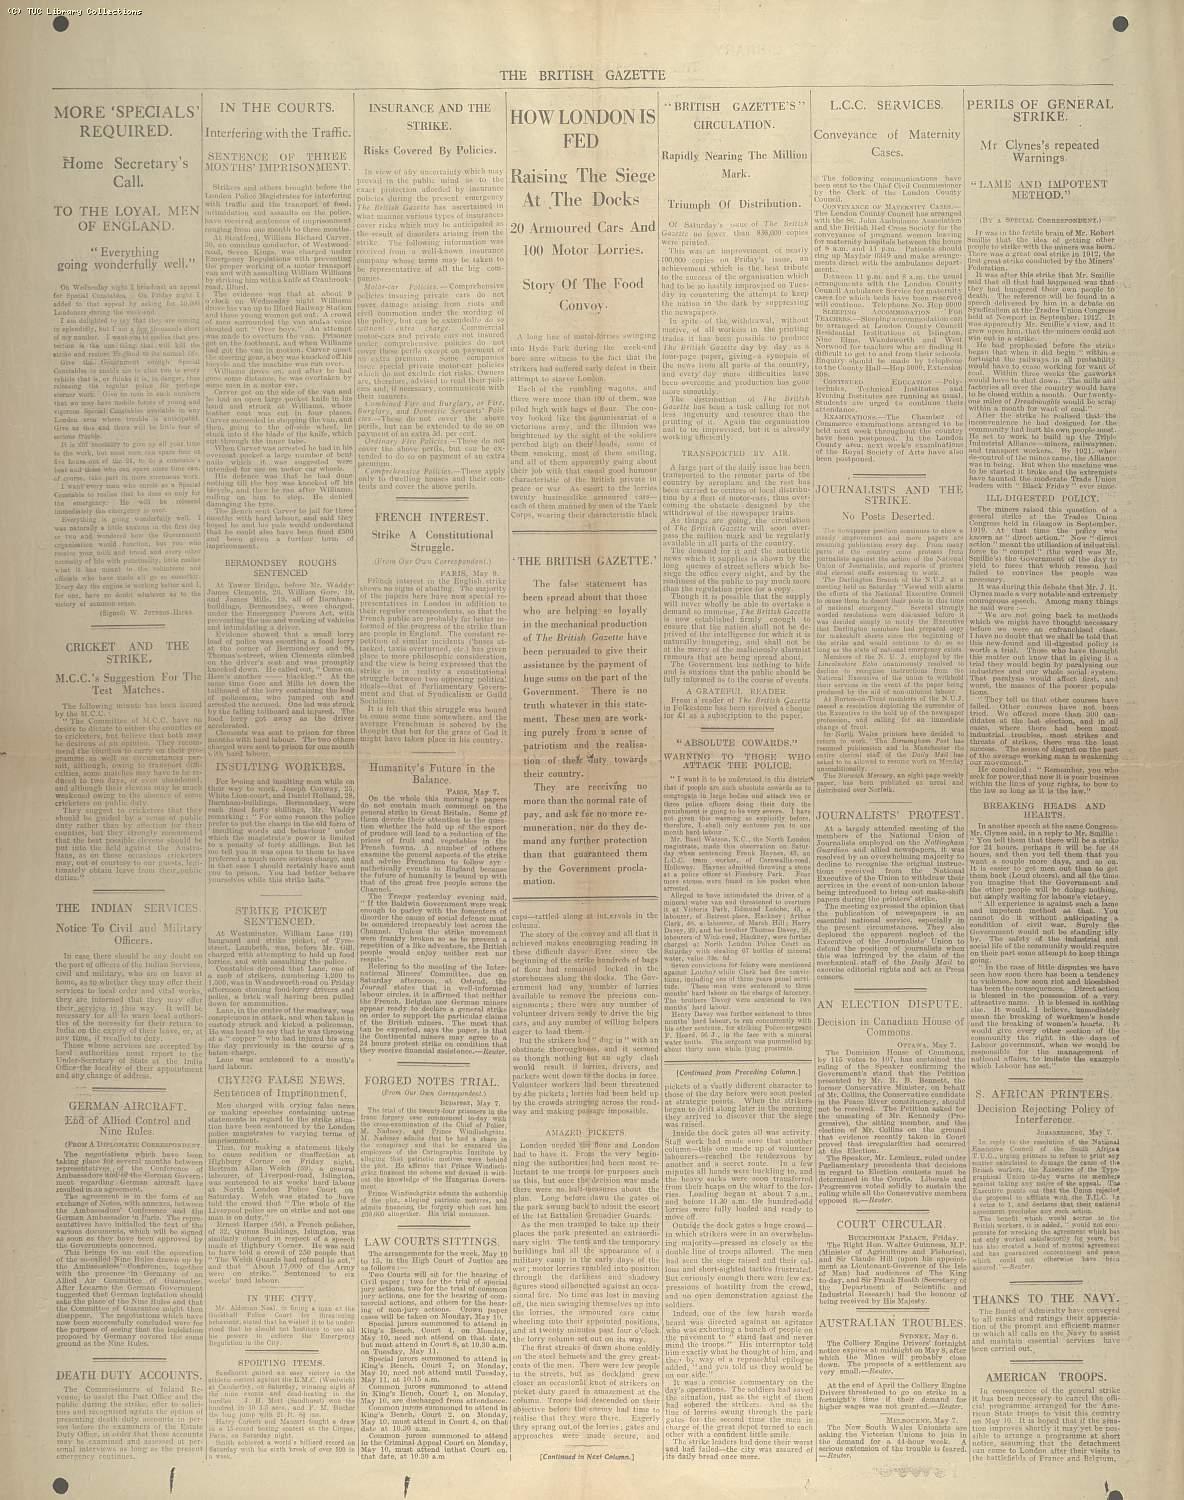 The British Gazette, 11 May 1926